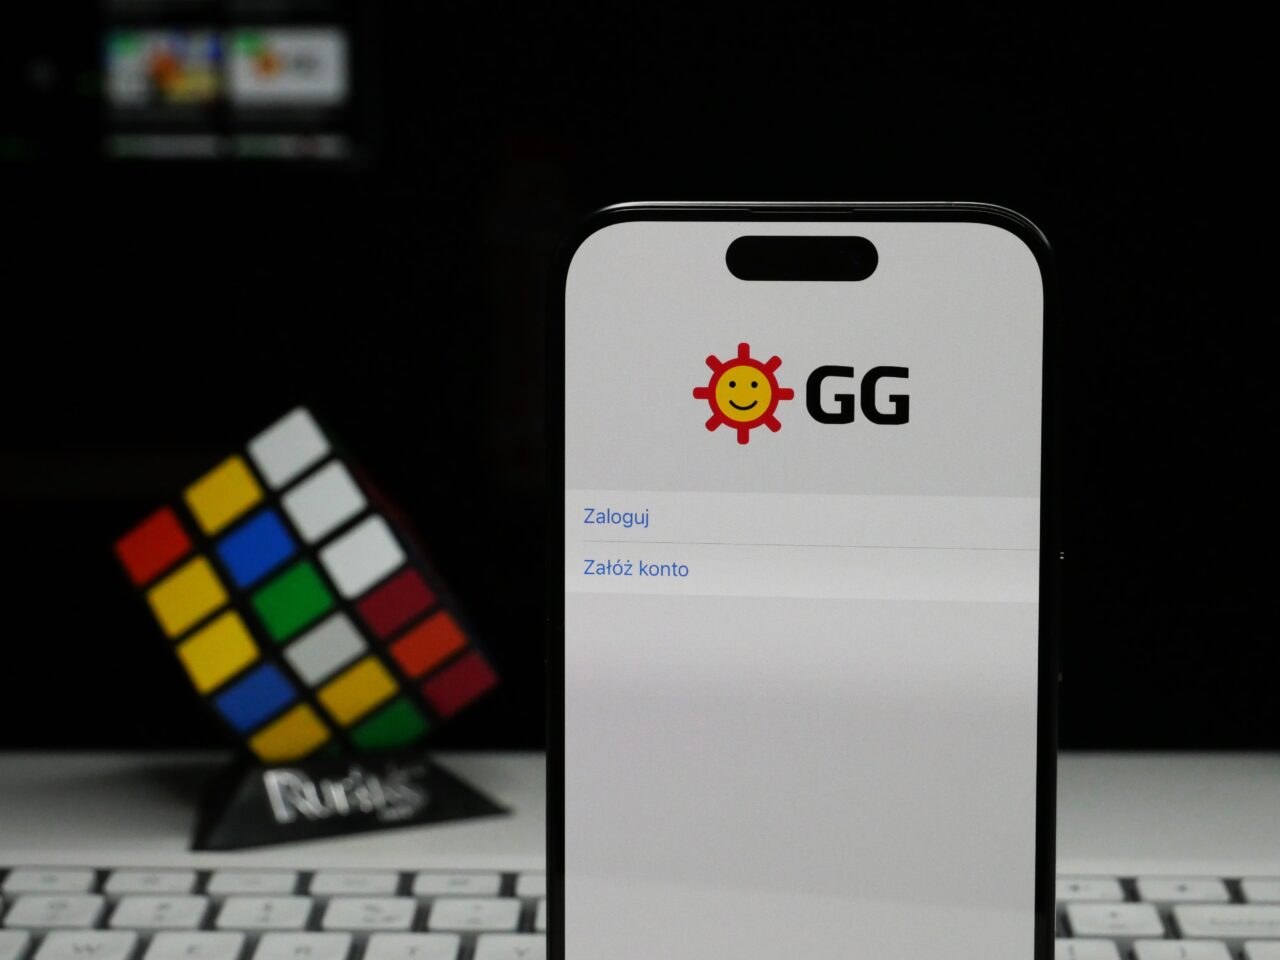 Smartfon z otwartą aplikacją o nazwie "GG" oraz ikoną uśmiechniętego słońca na ekranie, w tle niewyraźny kostka Rubika i klawiatura komputera.